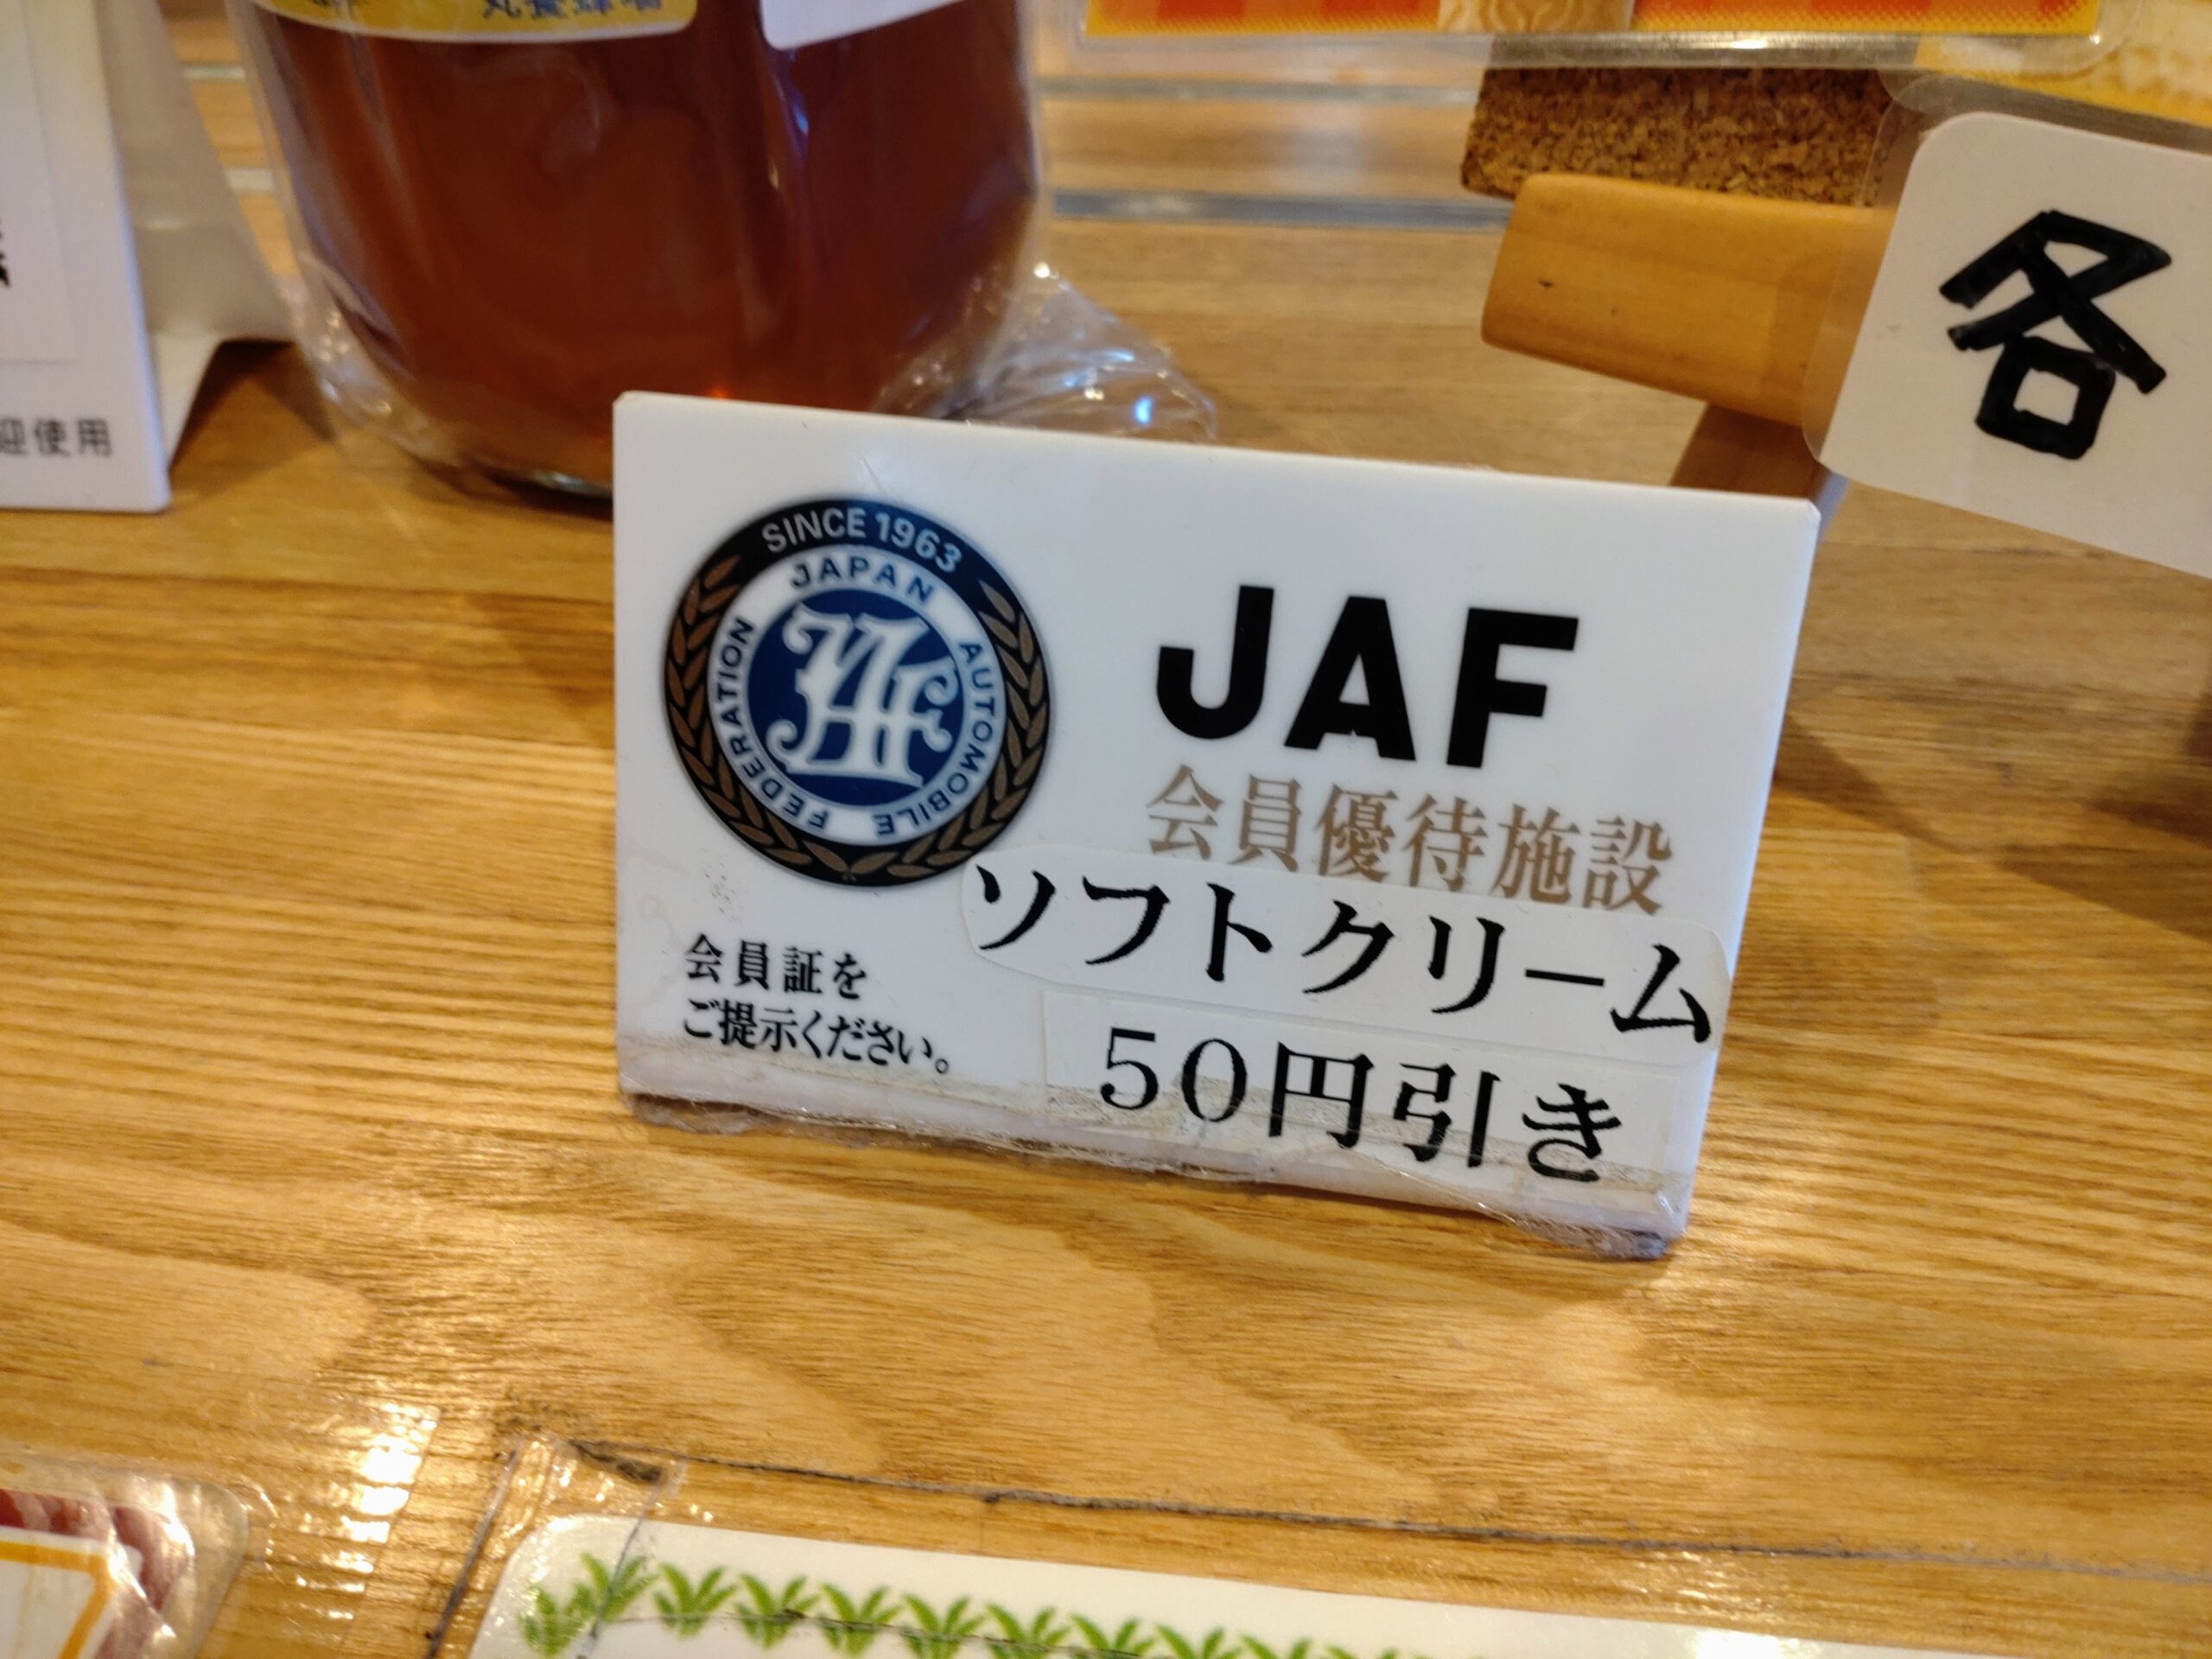 JAF会員証提示でソフトクリーム50円引き